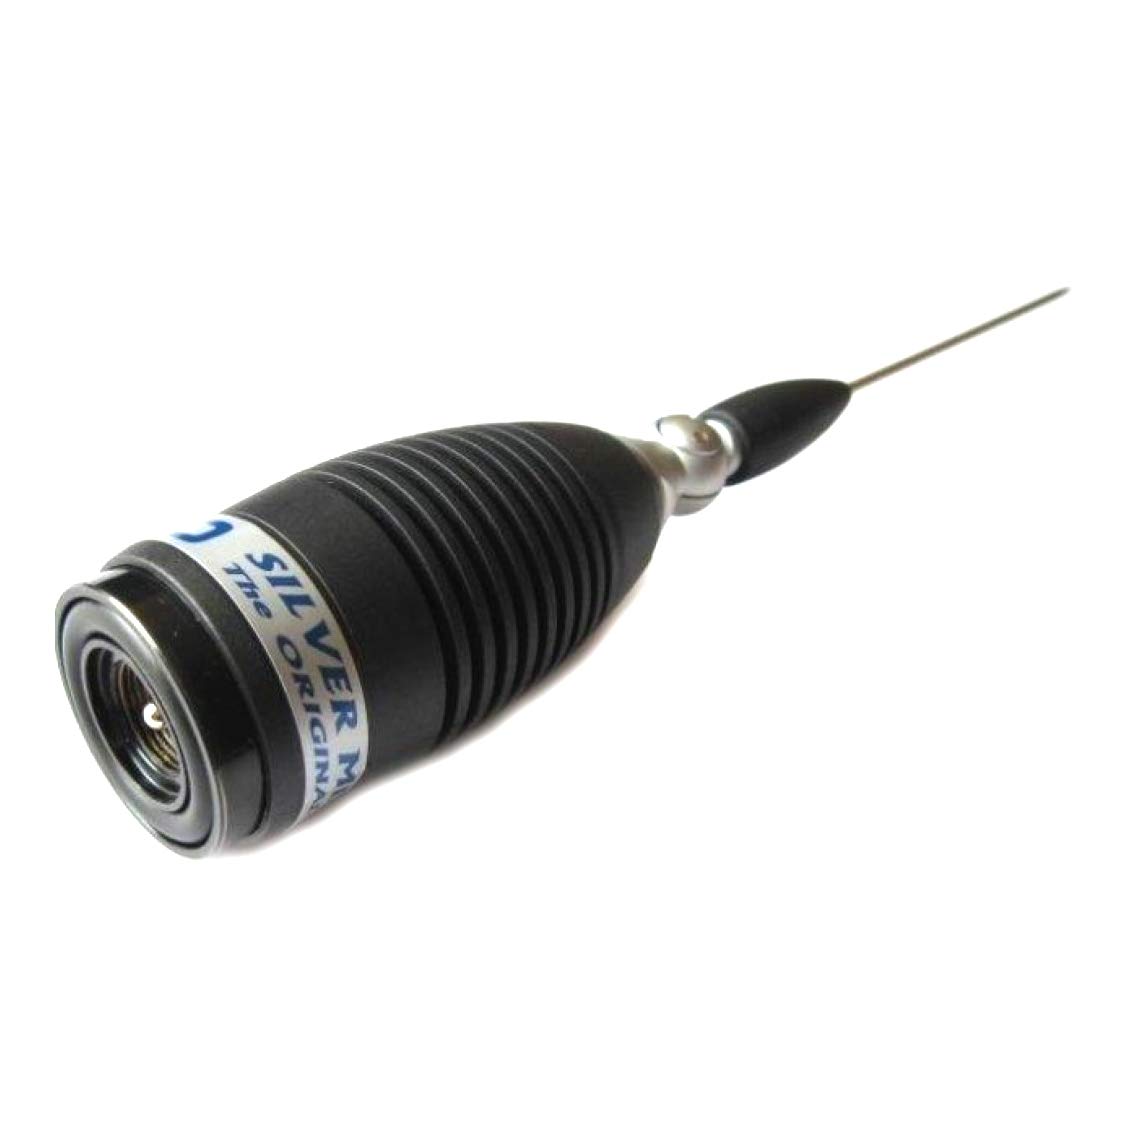 Sirio 2211605.05 Antenne CB Megawatt 4000 PL, 203.5 cm Code 2211605.05 ohne Kabel von Sirio